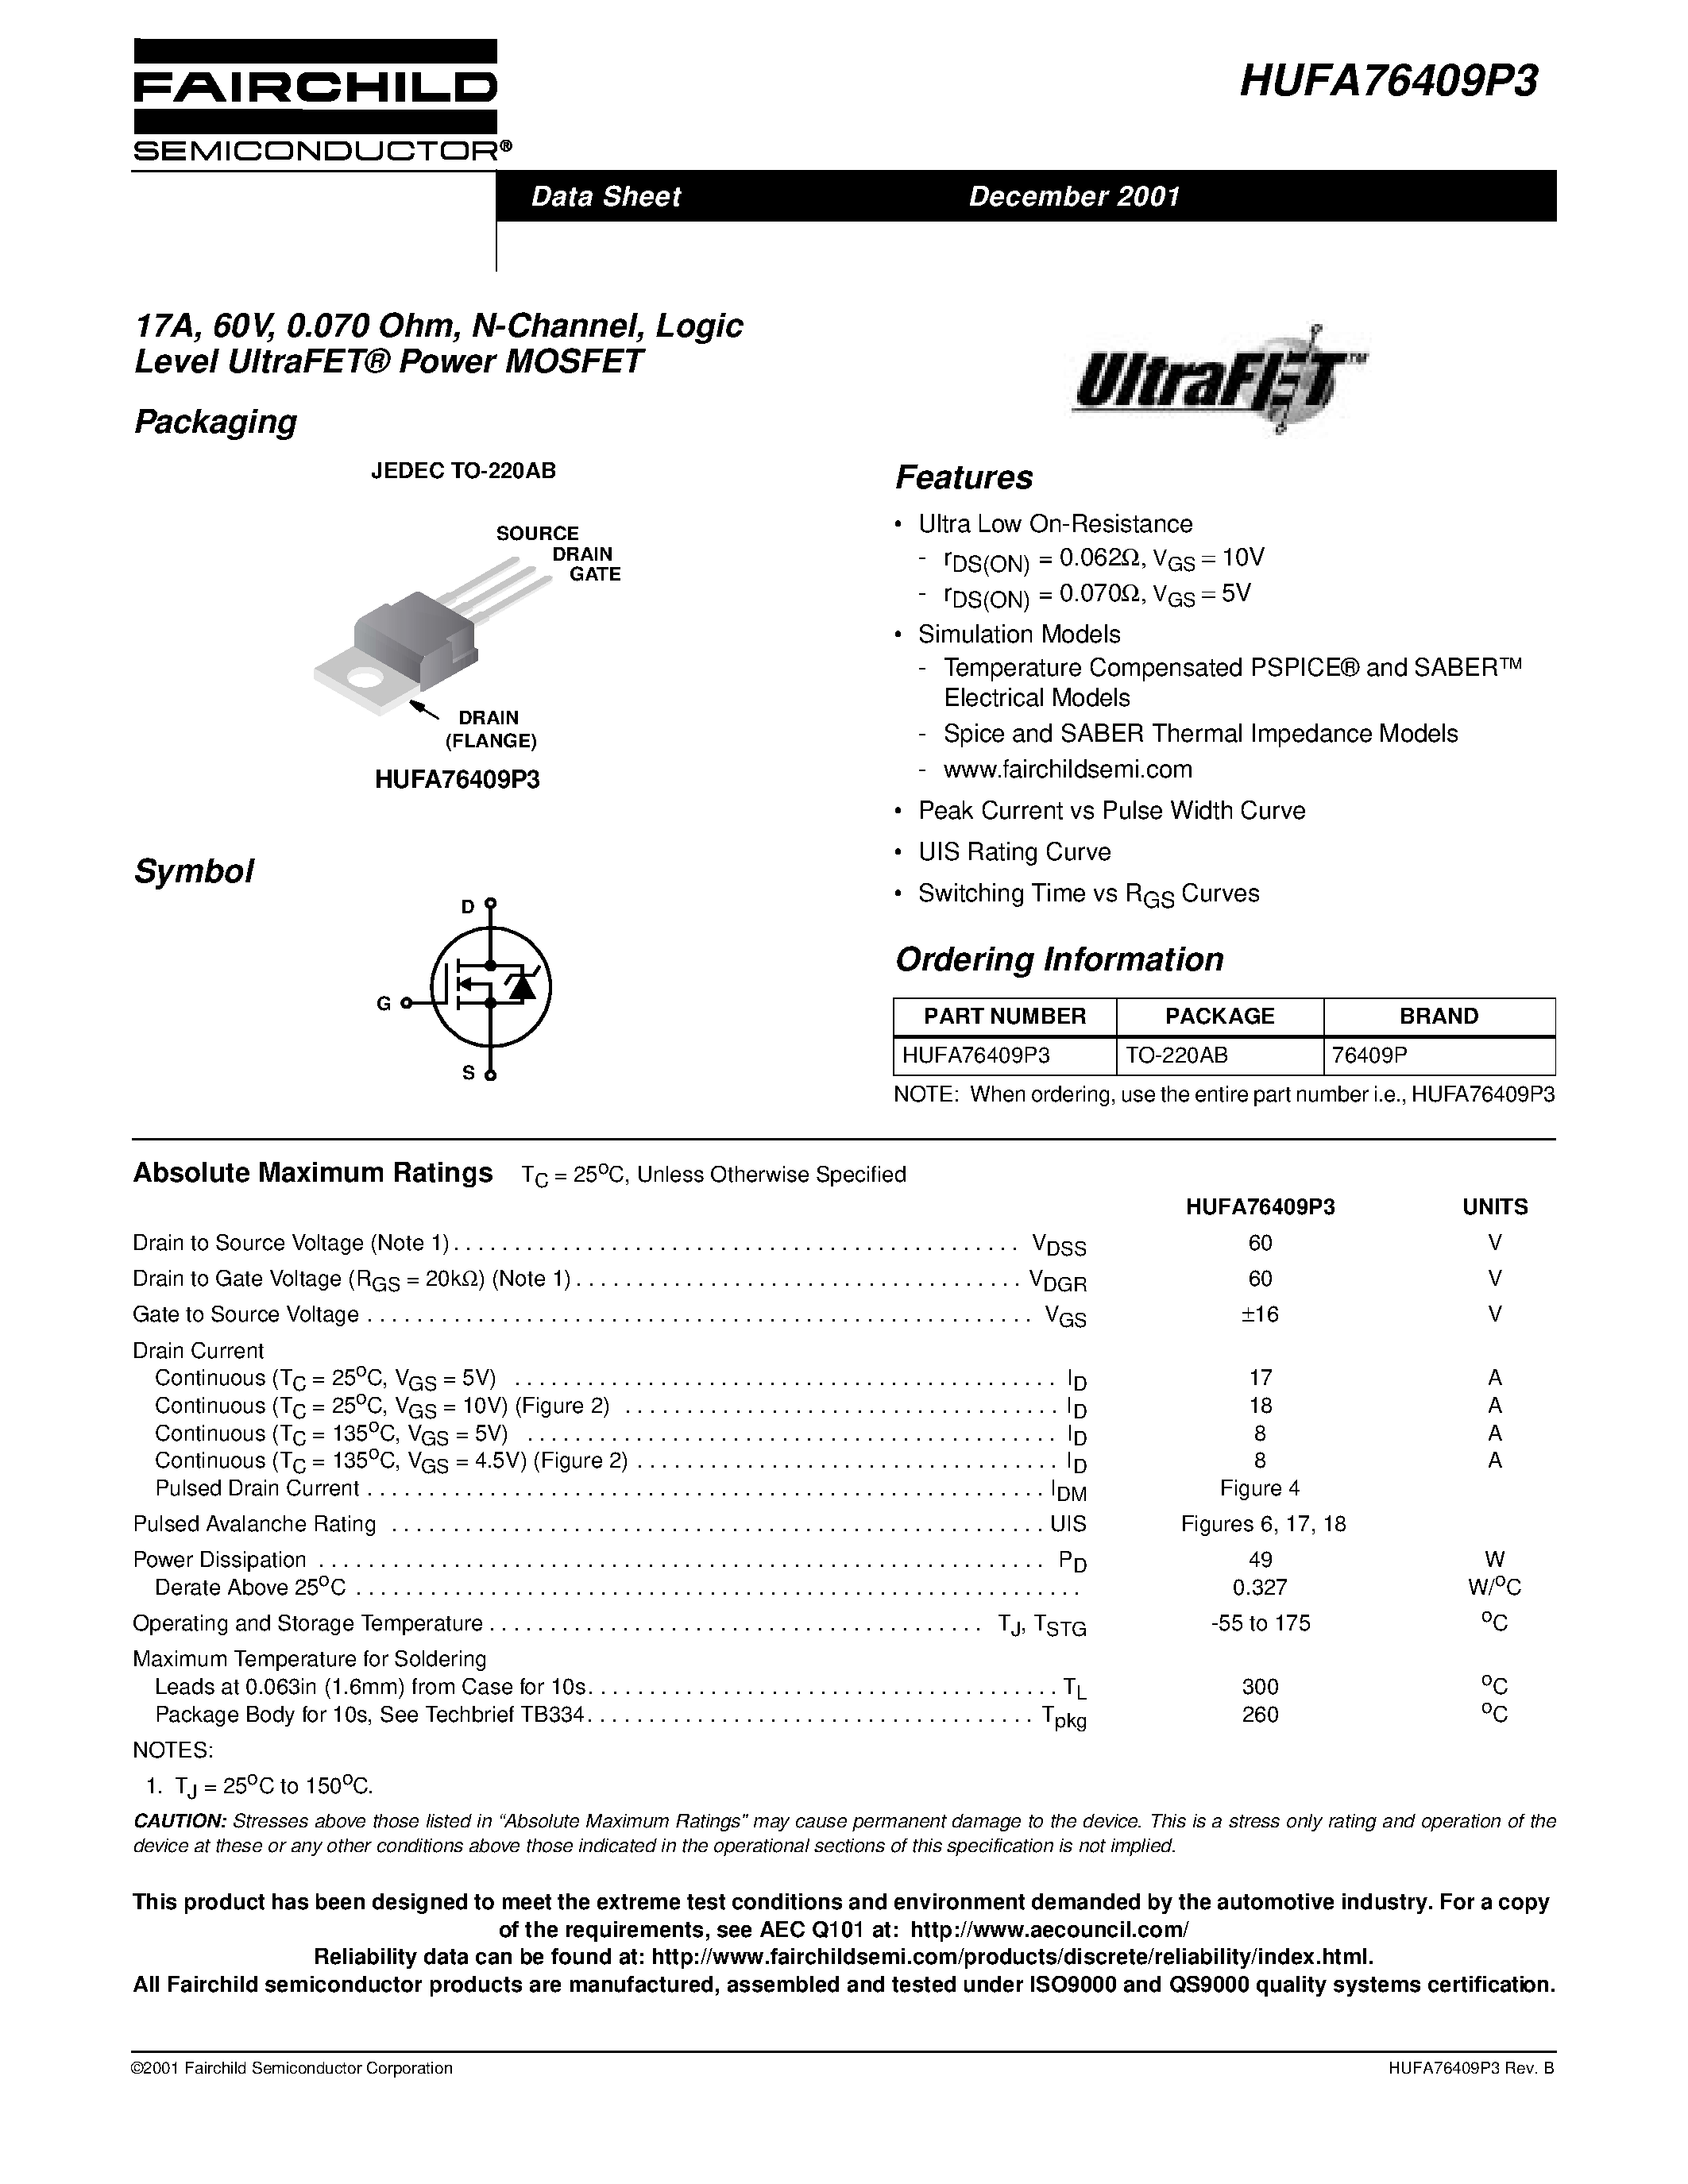 Даташит HUFA76409P3 - 17A/ 60V/ 0.070 Ohm/ N-Channel/ Logic Level UltraFET Power MOSFET страница 1